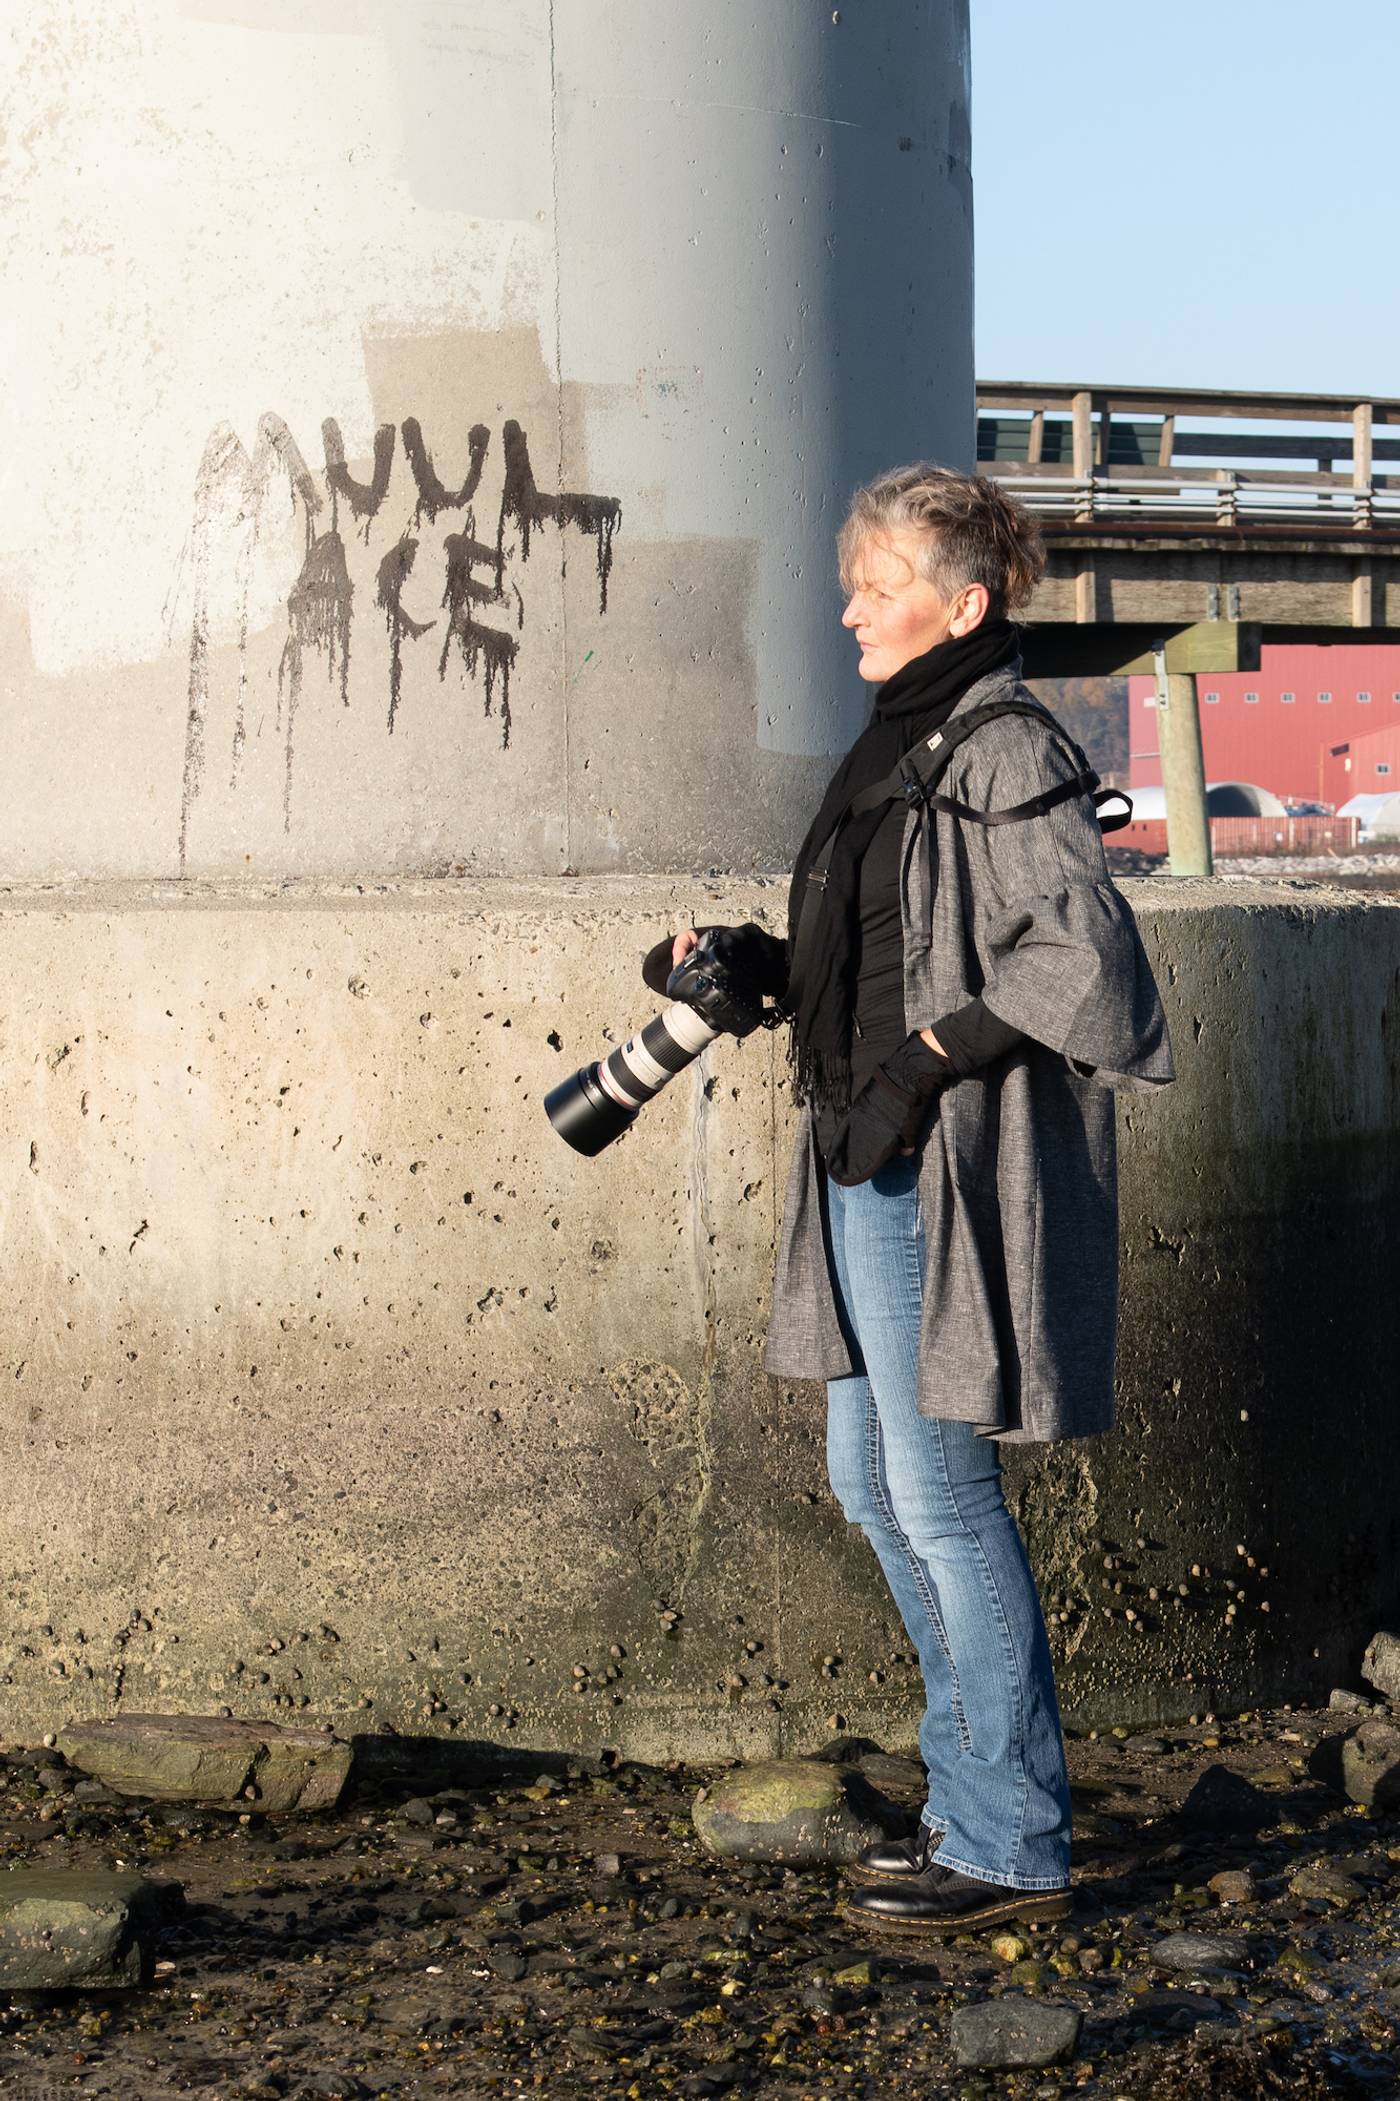 Joanne standing next to graffiti, modeling the brush duster